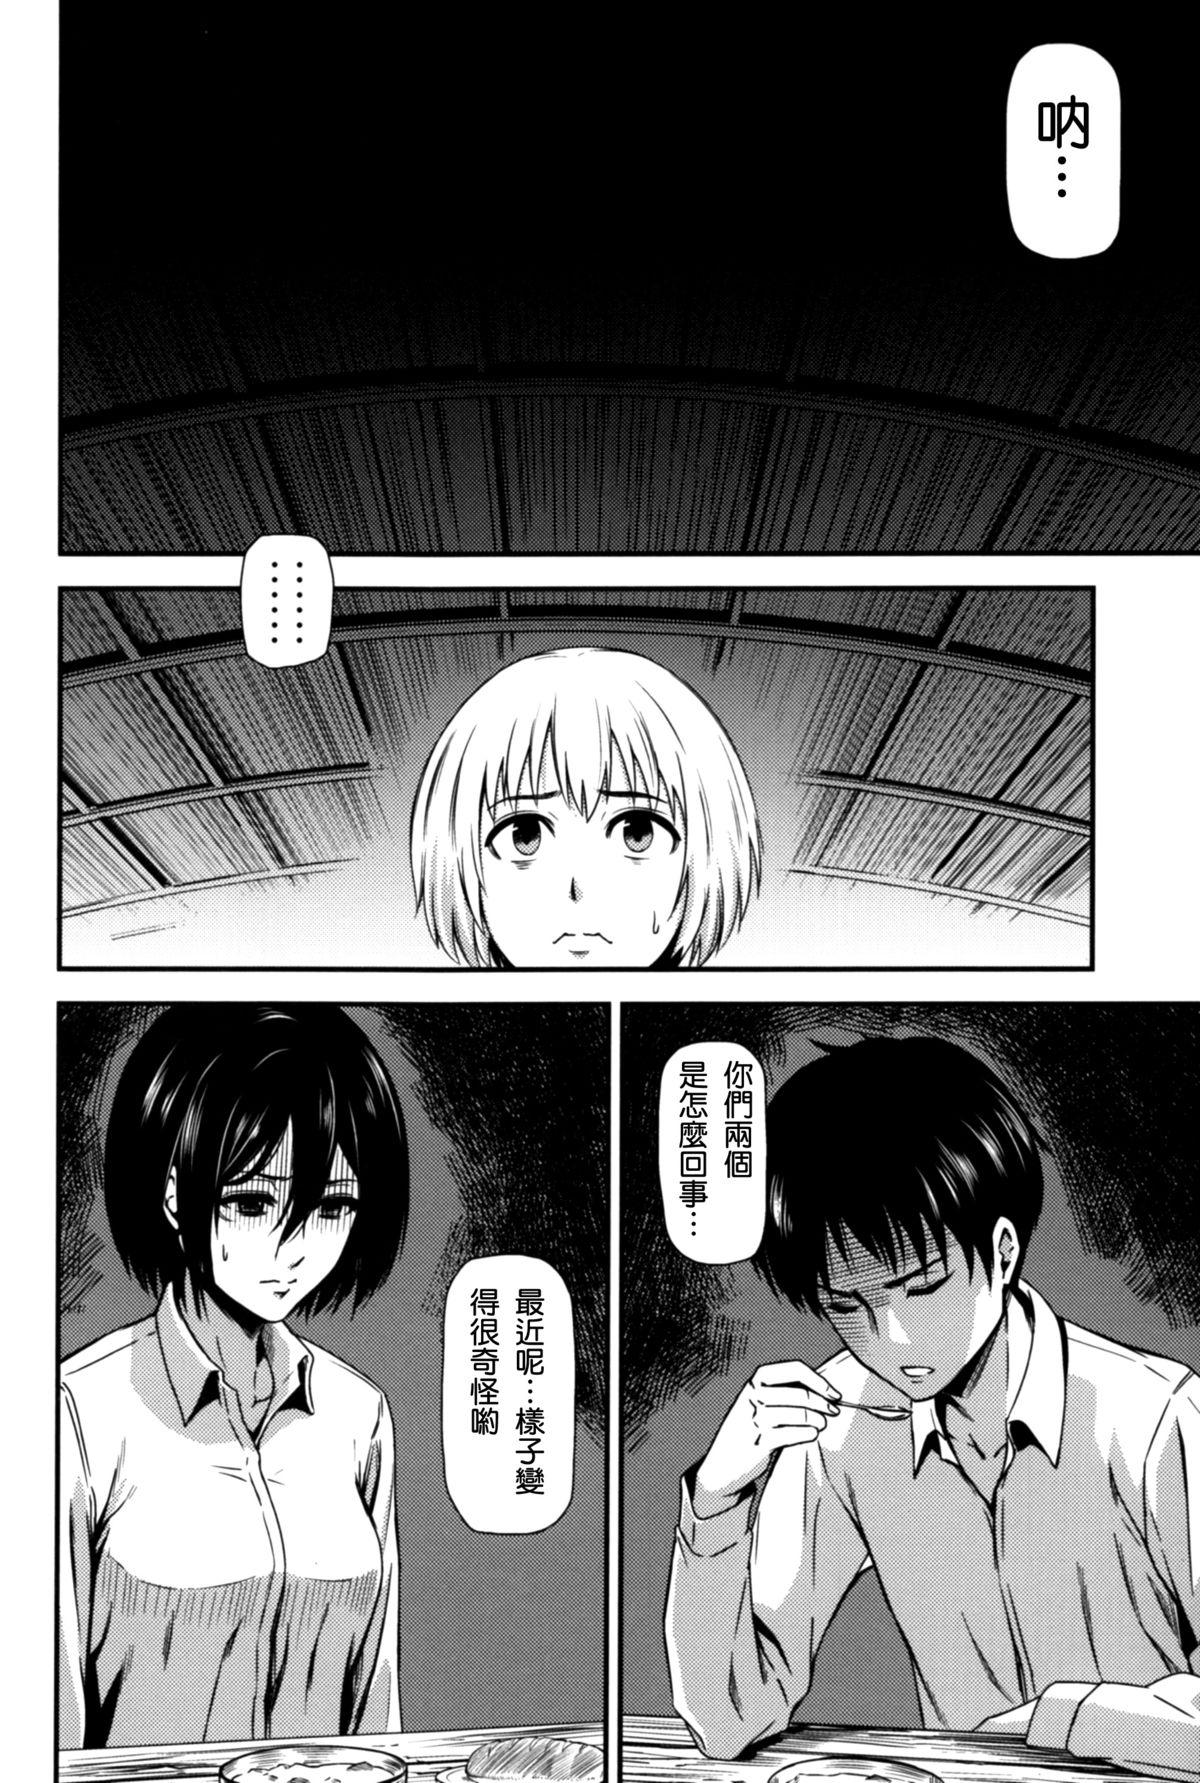 Oral Gekishin Yon - Shingeki no kyojin Anime - Page 5